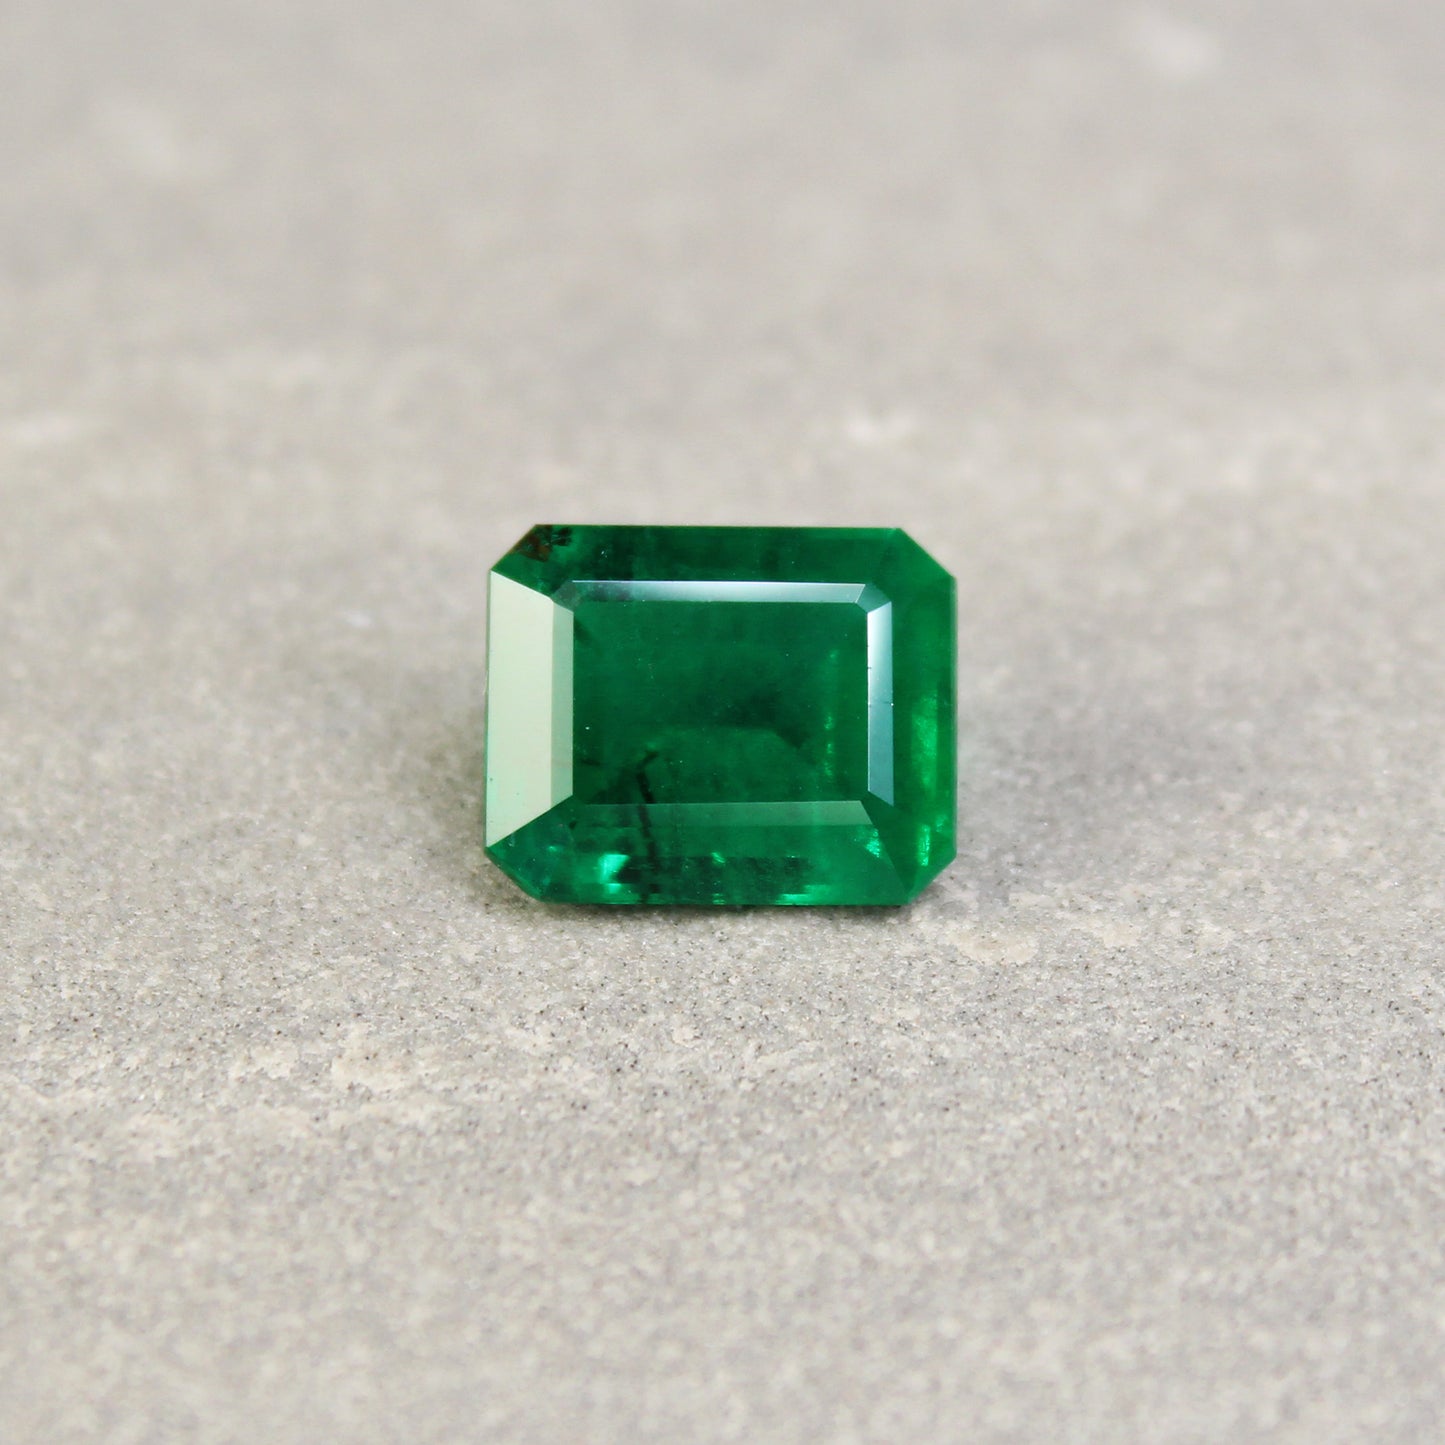 3.83ct Octagon Emerald, Minor Oil, Zambia - 10.84 x 8.81 x 5.60mm